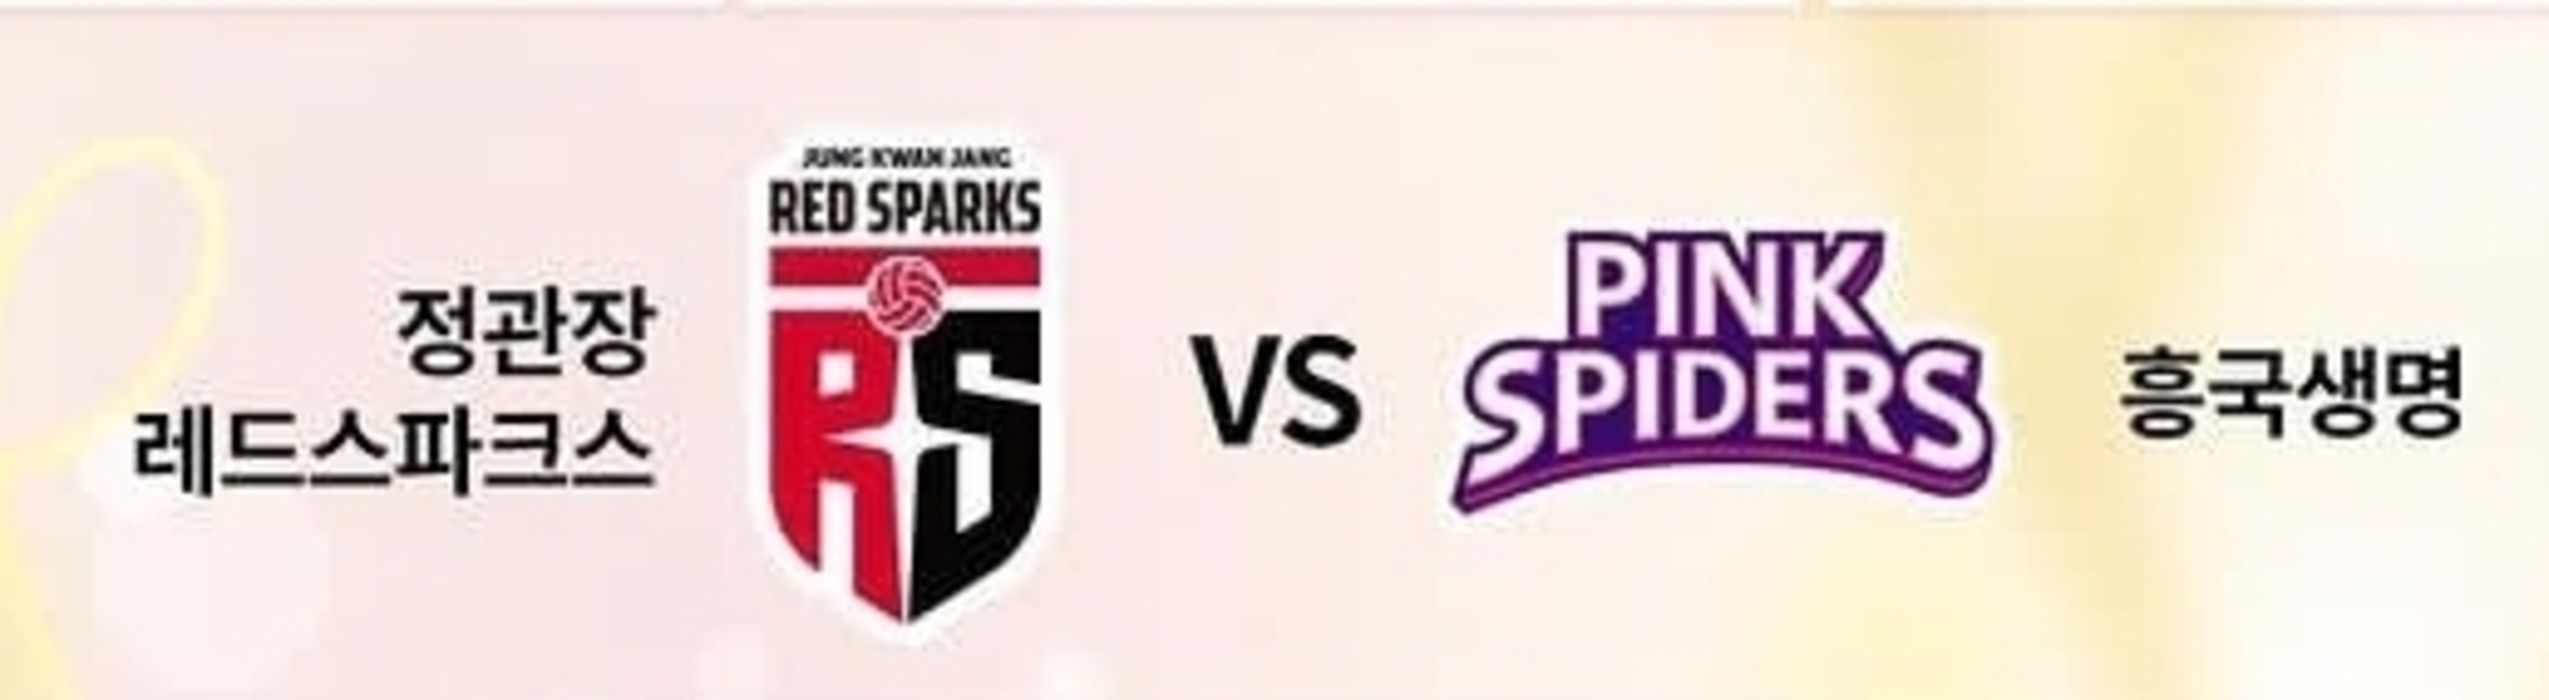 Jadwal Play Off Red Sparks vs Pink Spiders Liga Voli Putri Korea